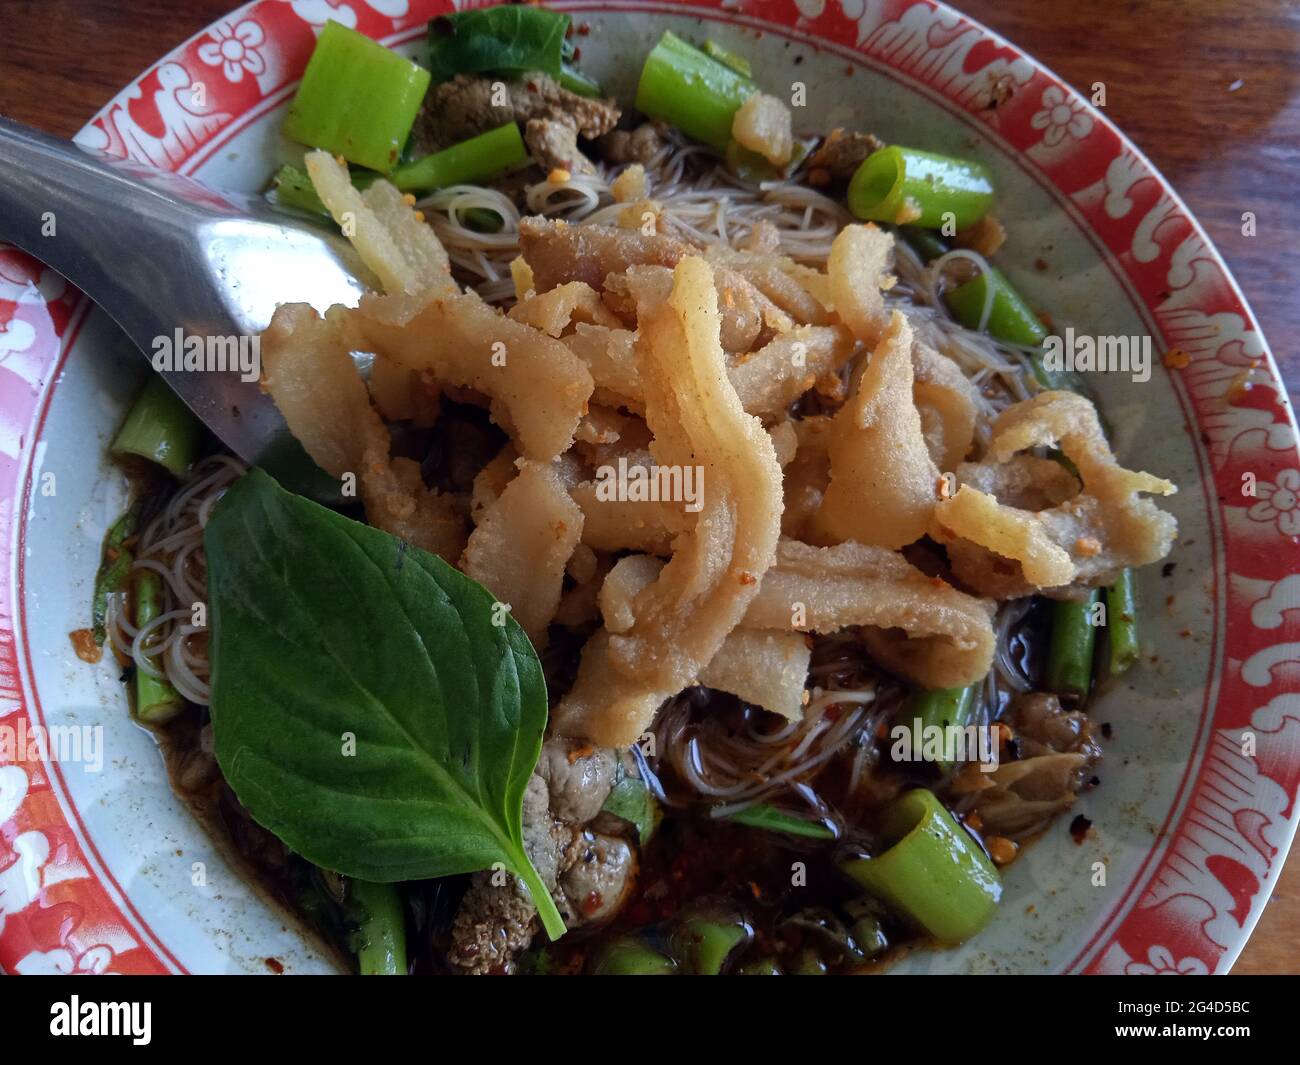 Fotos de la comida tailandesa que me gusta comer mucho. Foto de stock